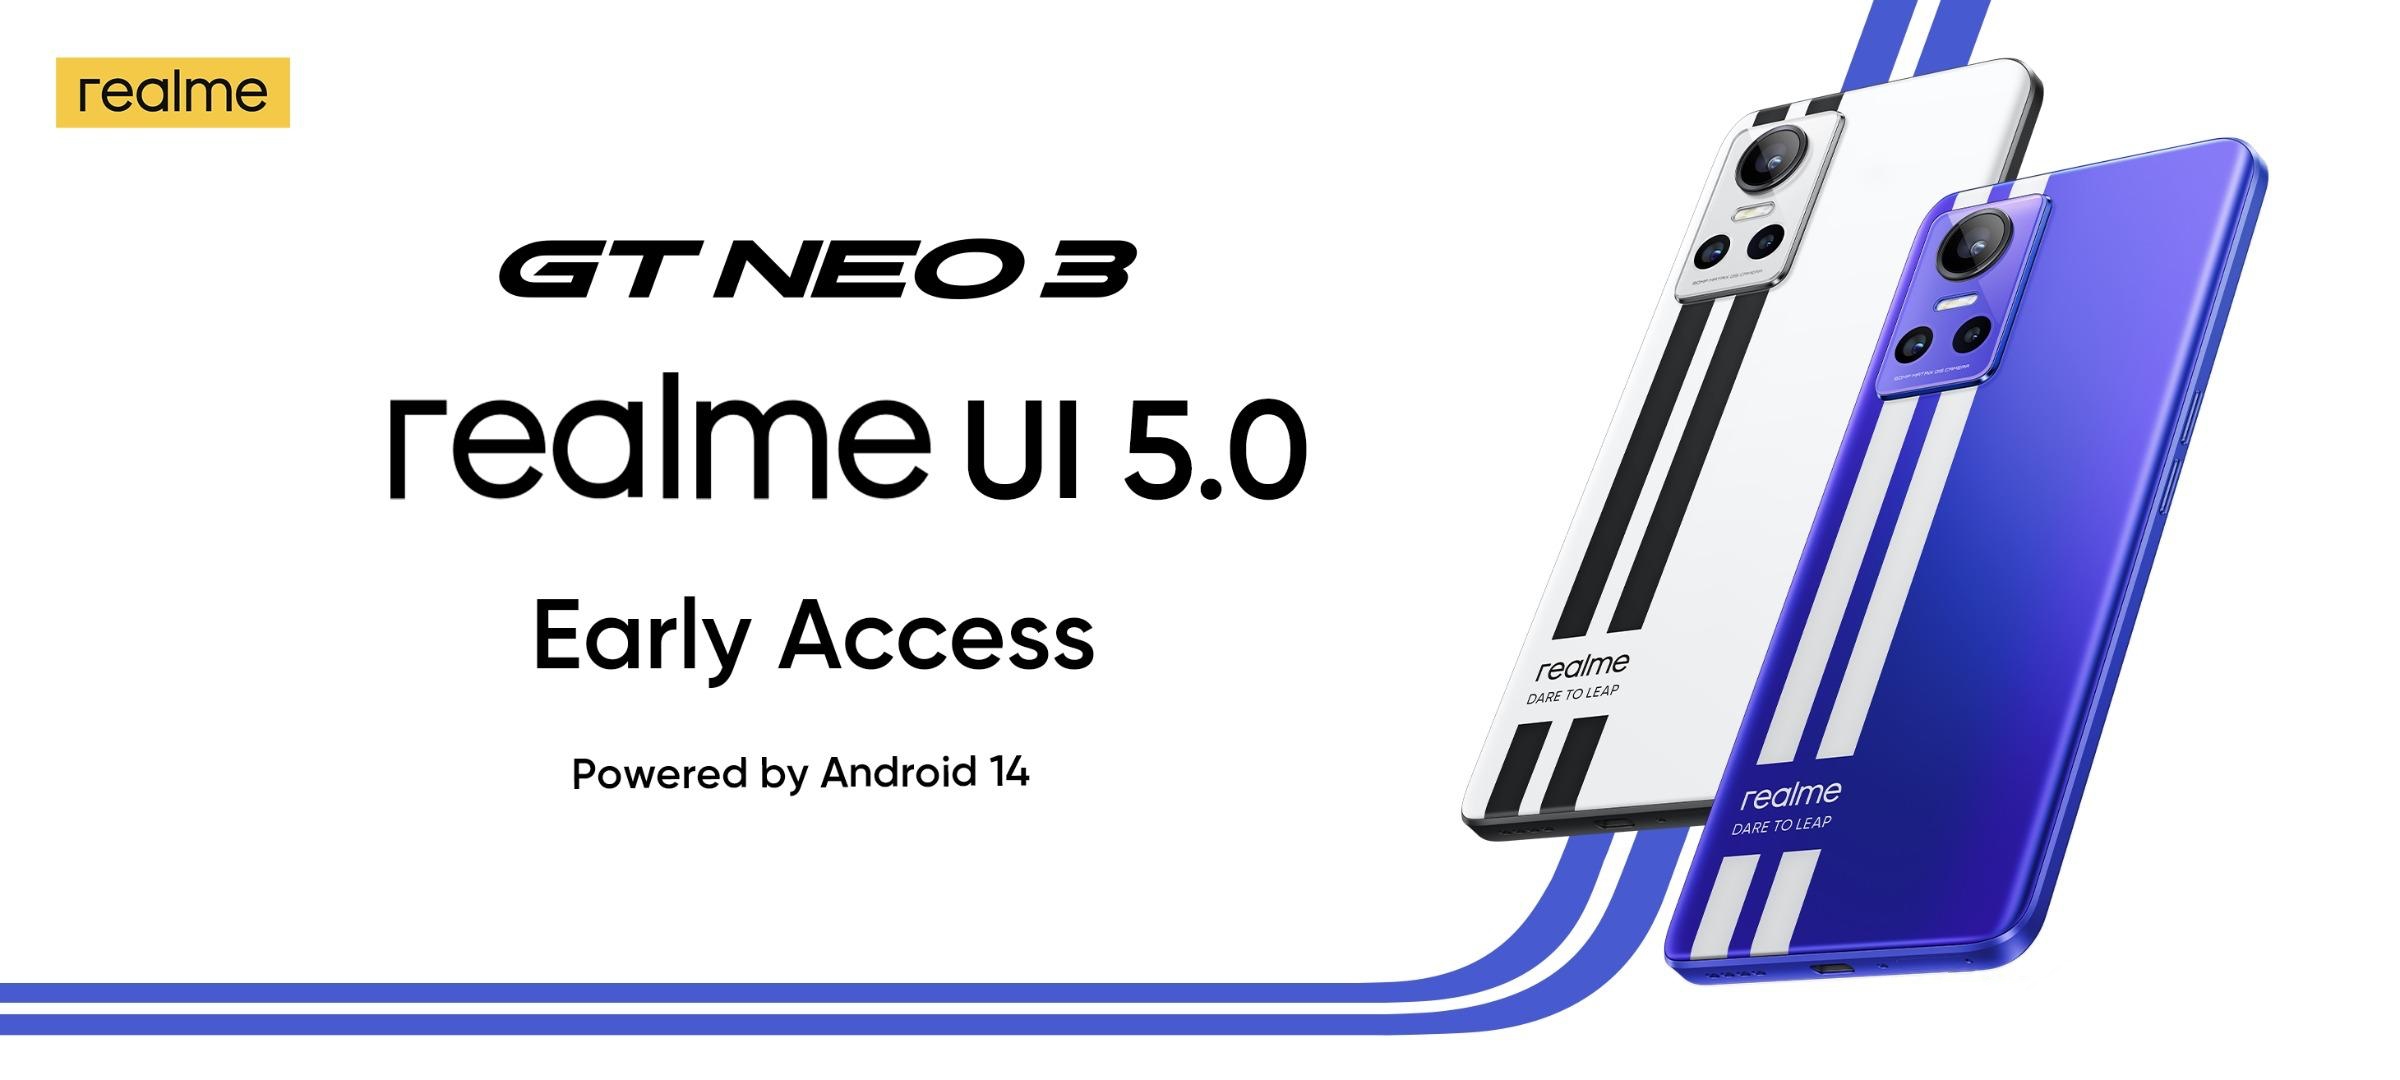 realme hat das auf Android 14 basierende realme UI 5.0 Testprogramm für das realme GT Neo 3 und realme GT Neo 3 150W angekündigt